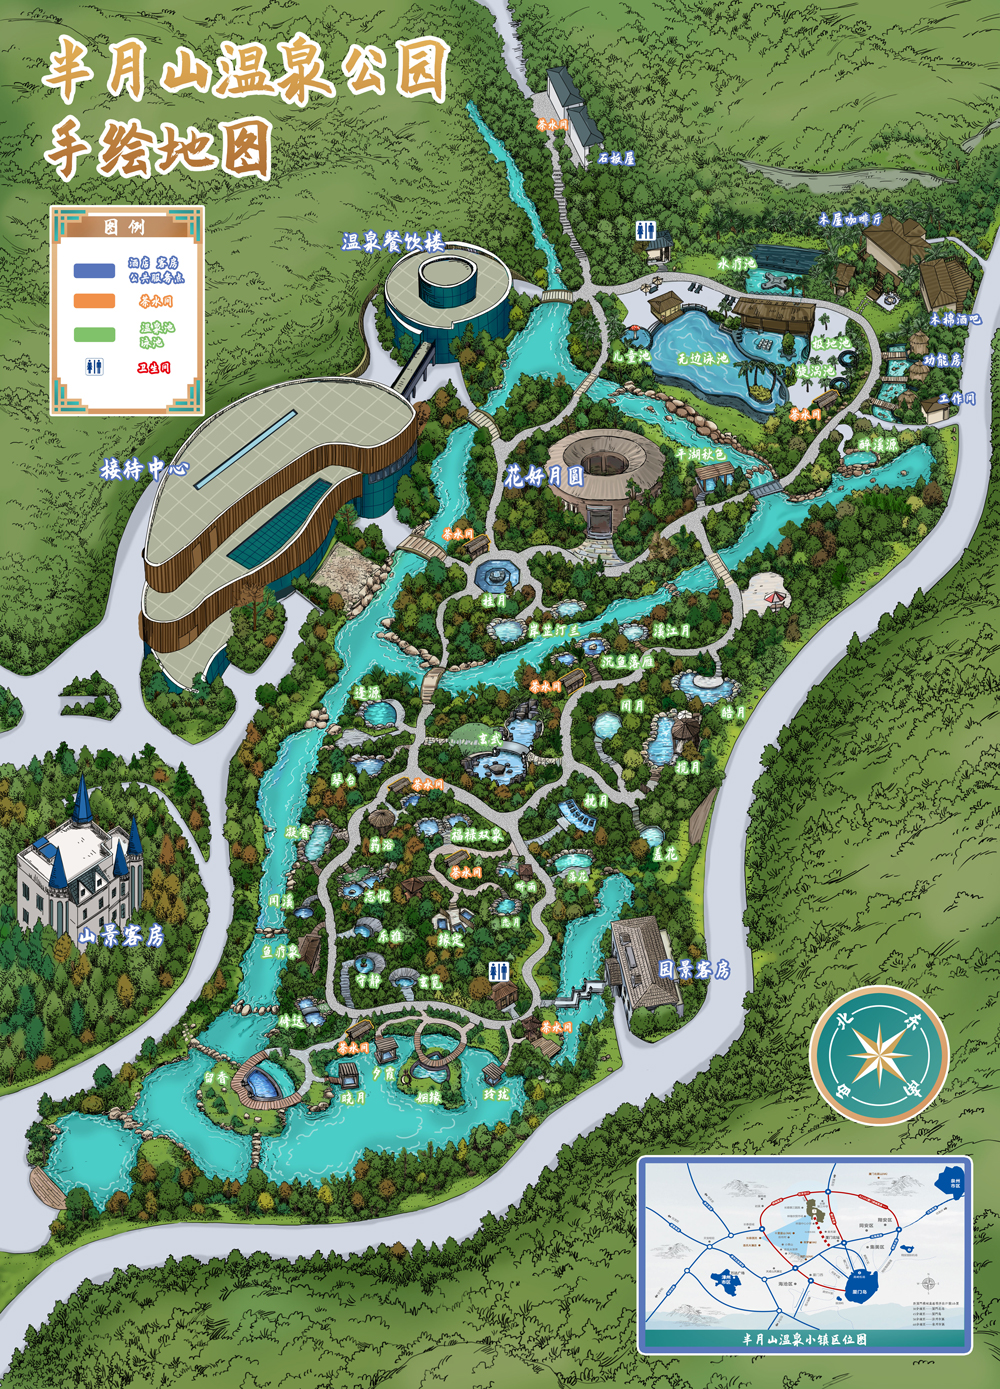 半月山温泉公园手绘地图定稿2.jpg